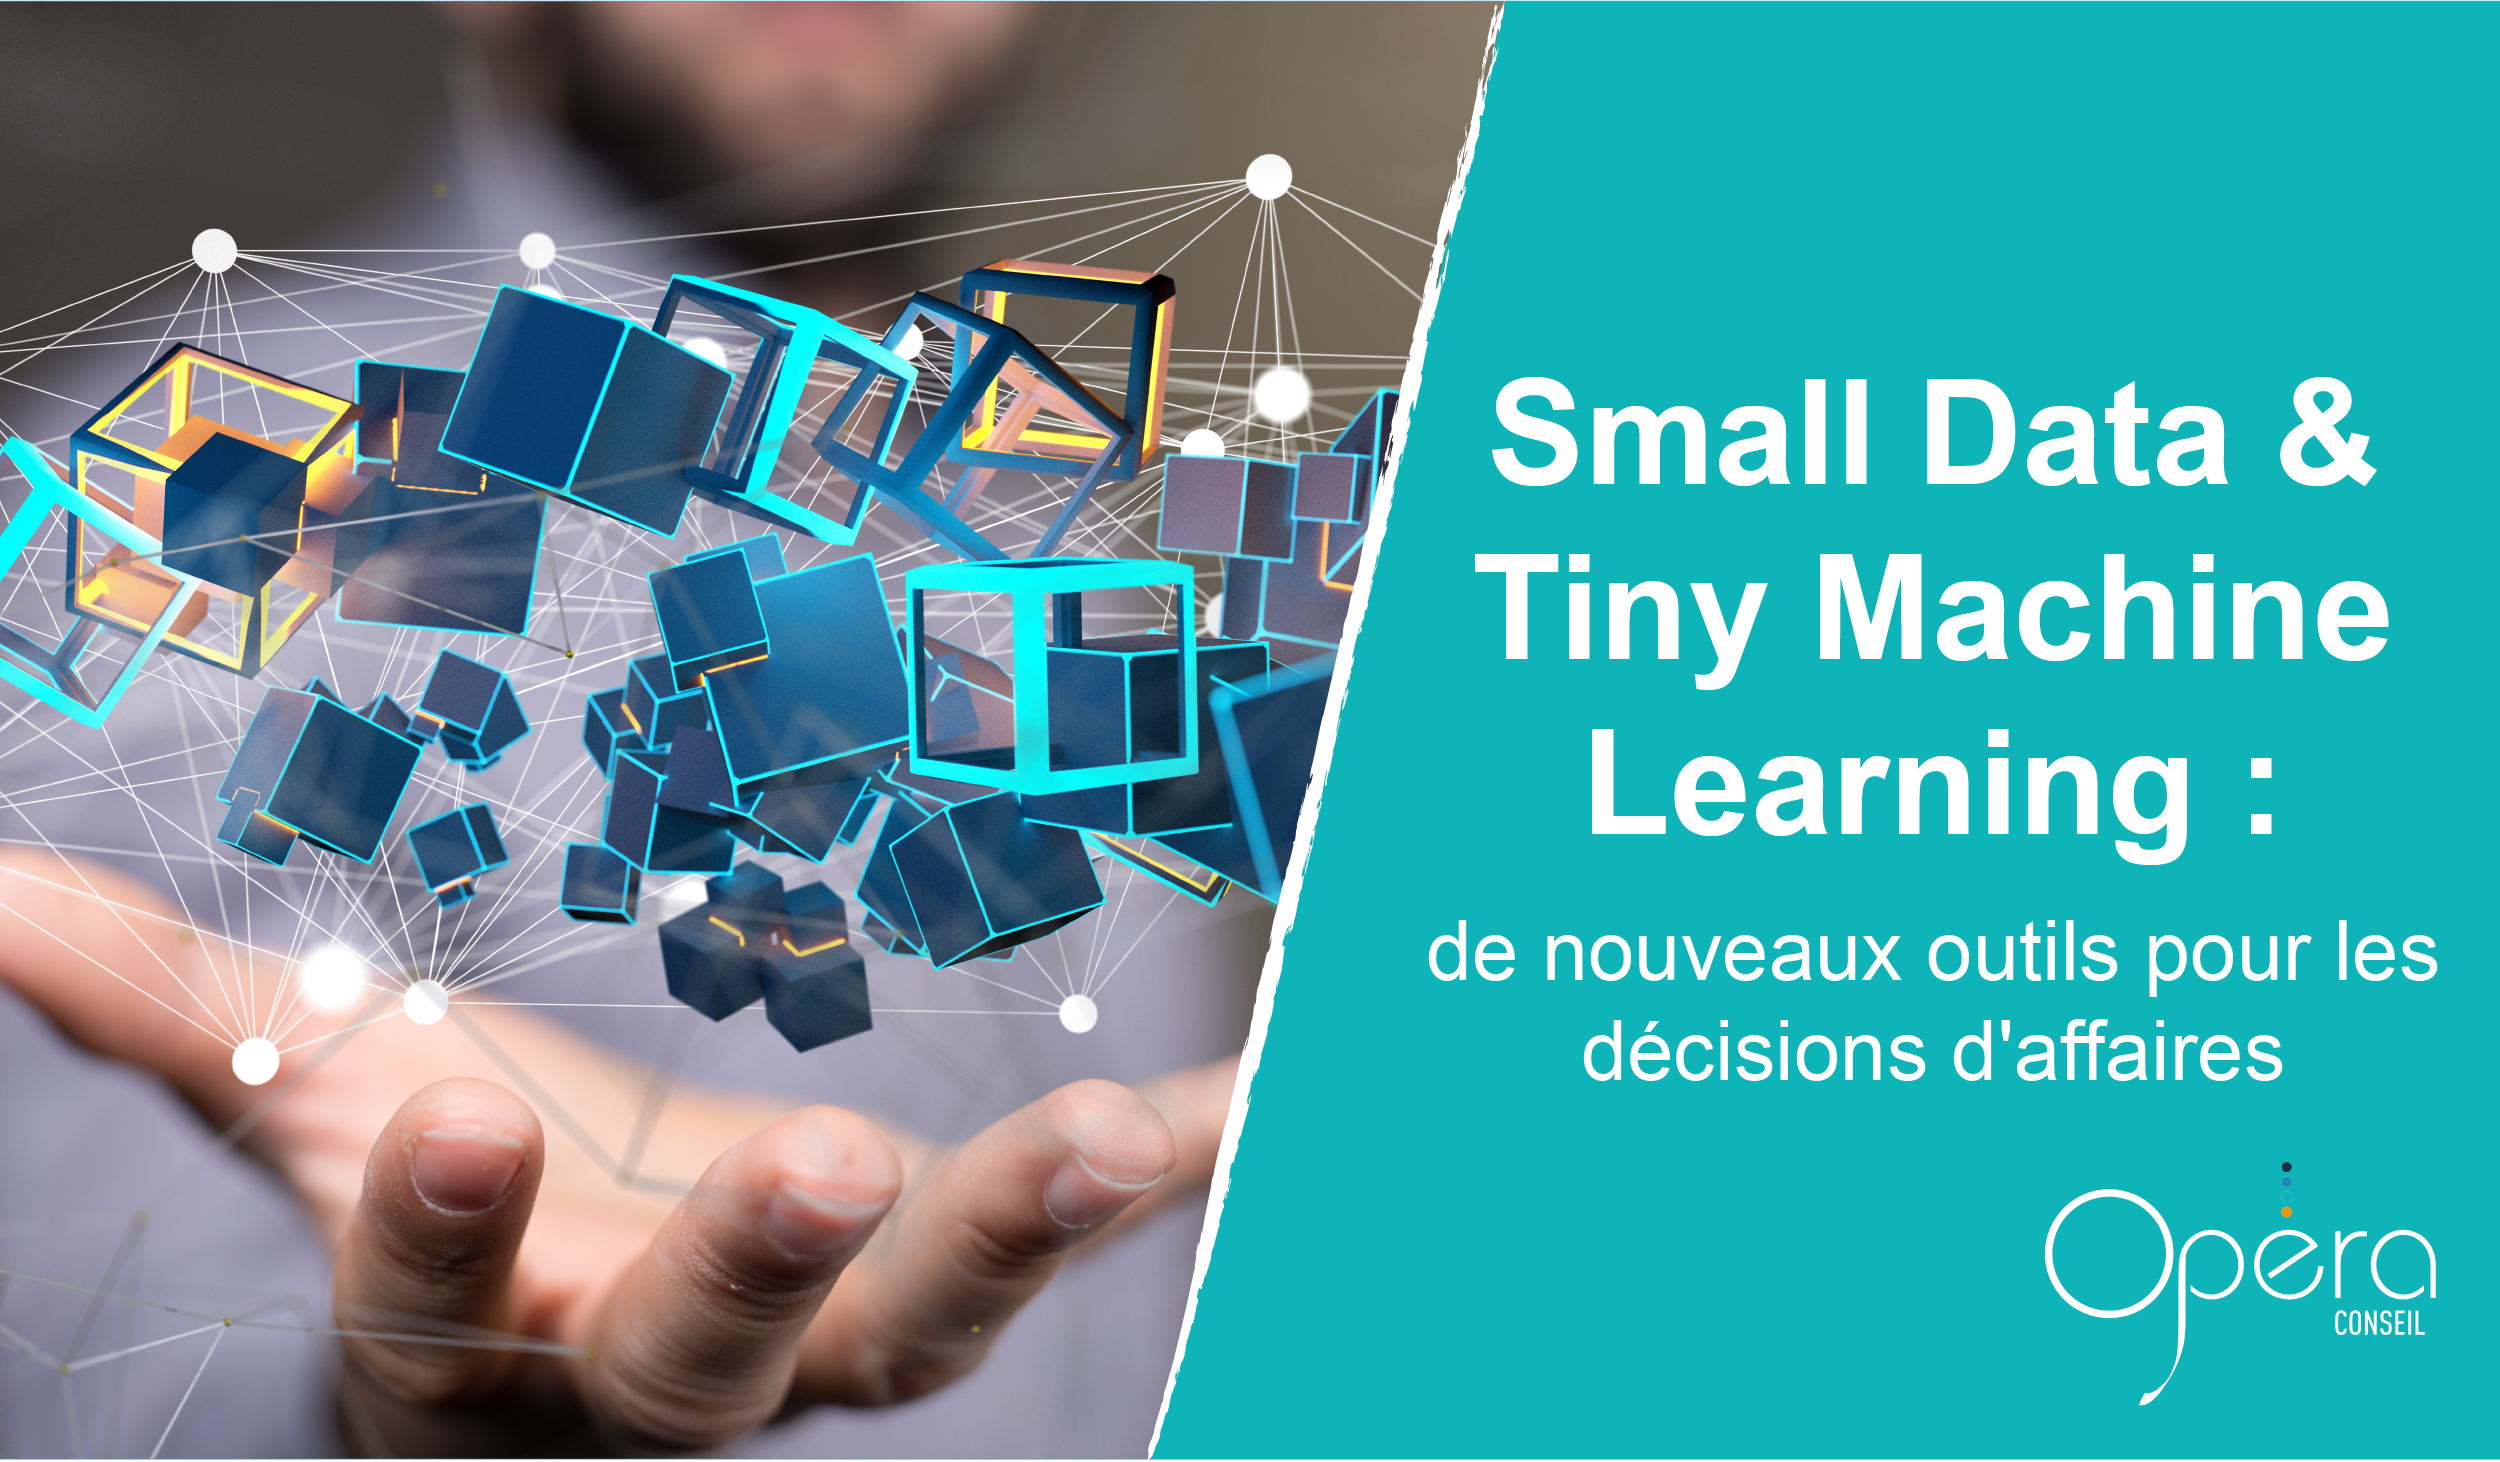 Small Data et Tiny Machine Learning : de nouveaux outils pour les décisions d'affaires